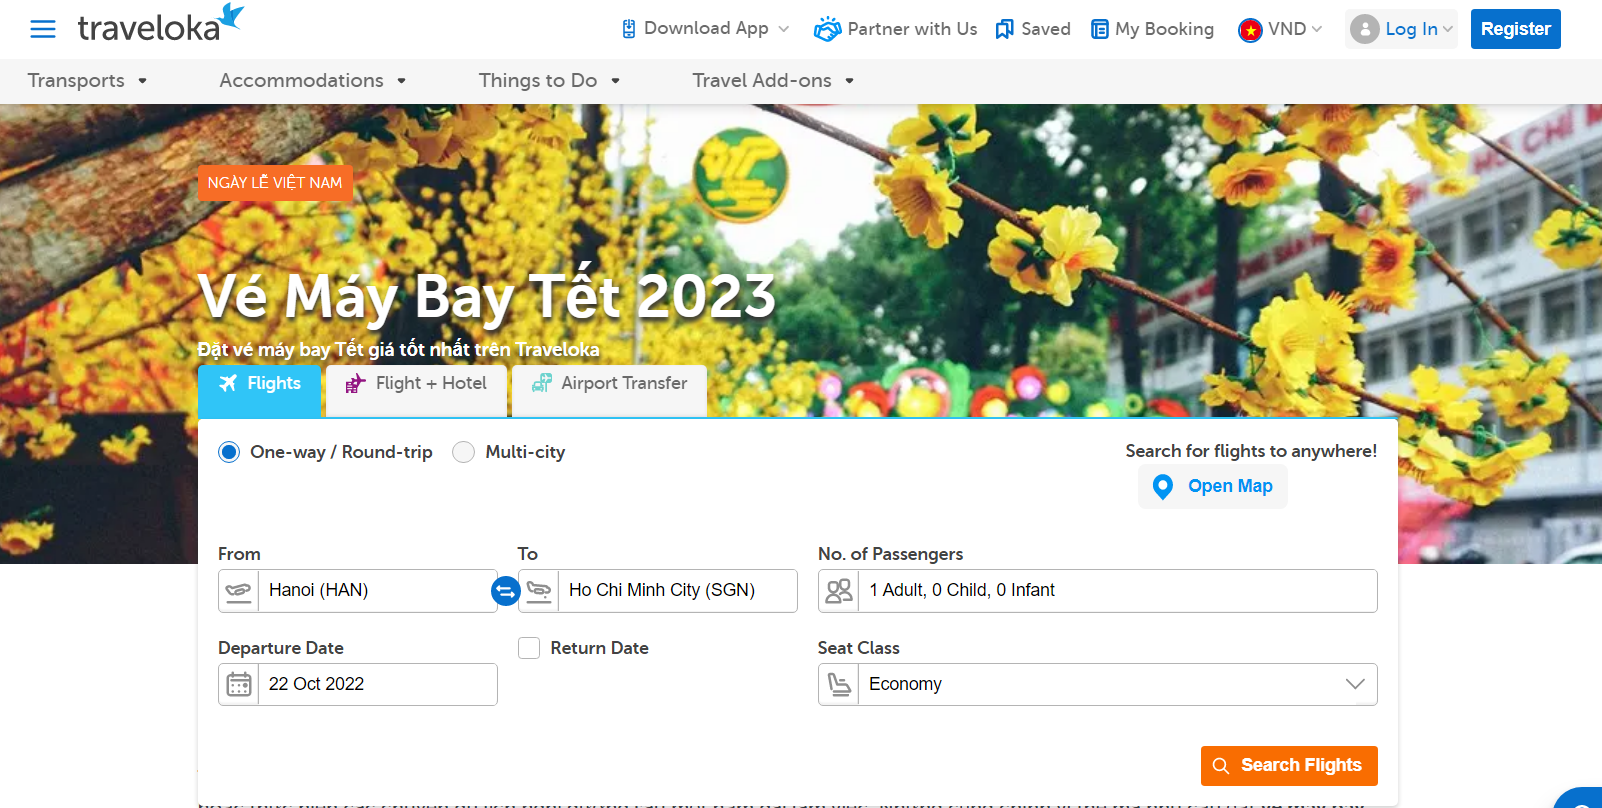 Đặt vé sớm để có được mức giá vé máy bay Tết 2023 ưu đãi (@traveloka)